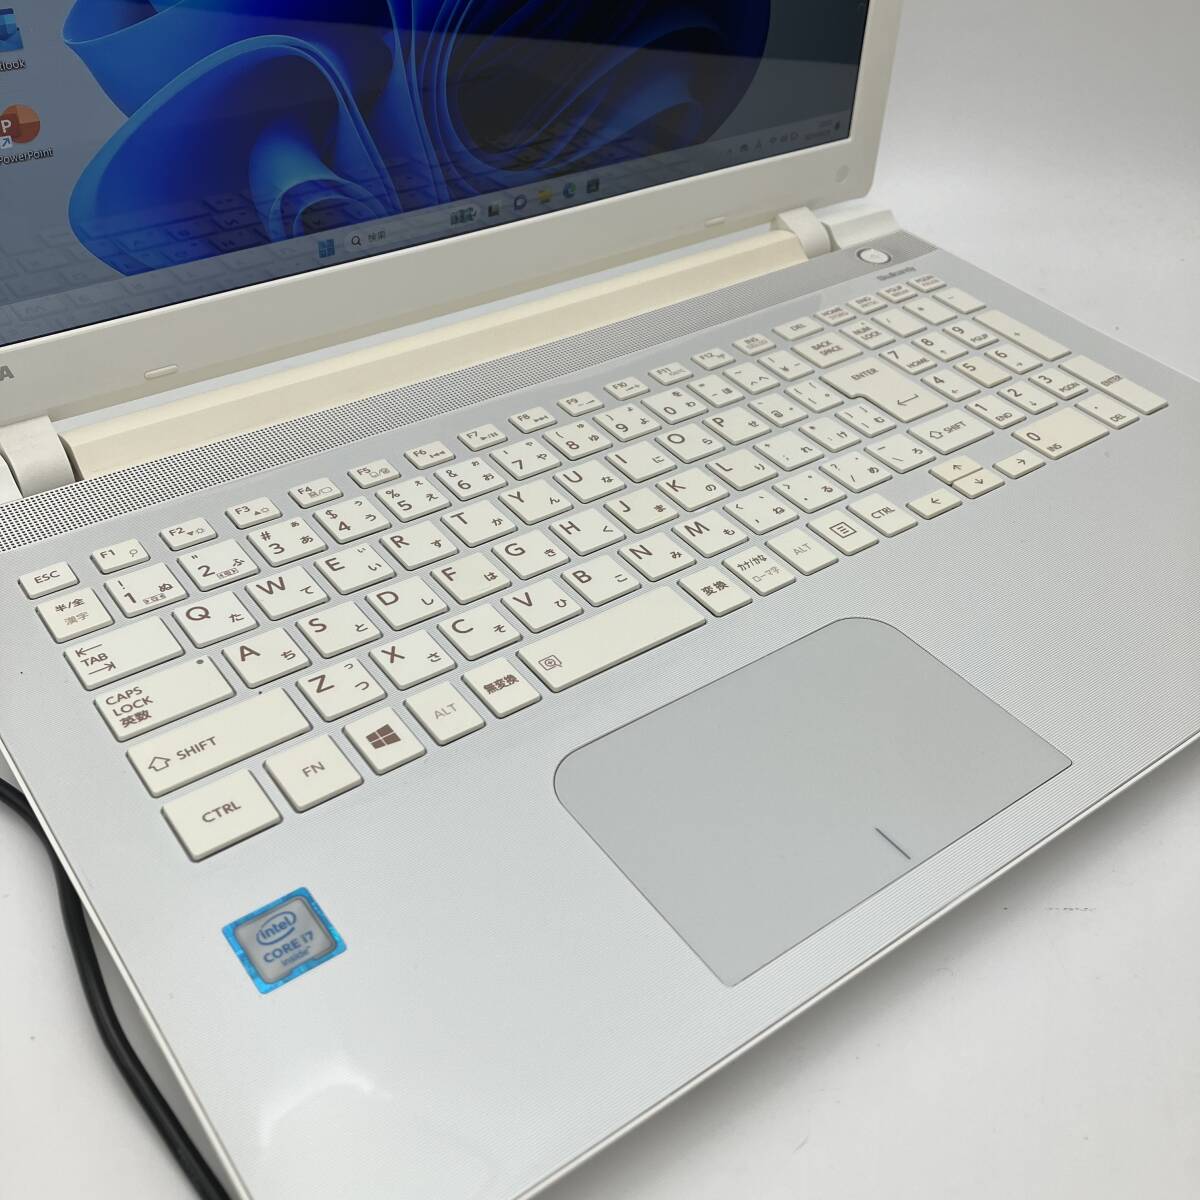 フルHD 最強i7 メモリ16GB 爆速新品SSD Core i7-6500U Windows11 Office2021 ONKYO製スピーカー Blu-ray Bluetooth 人気東芝ノートパソコン_画像5